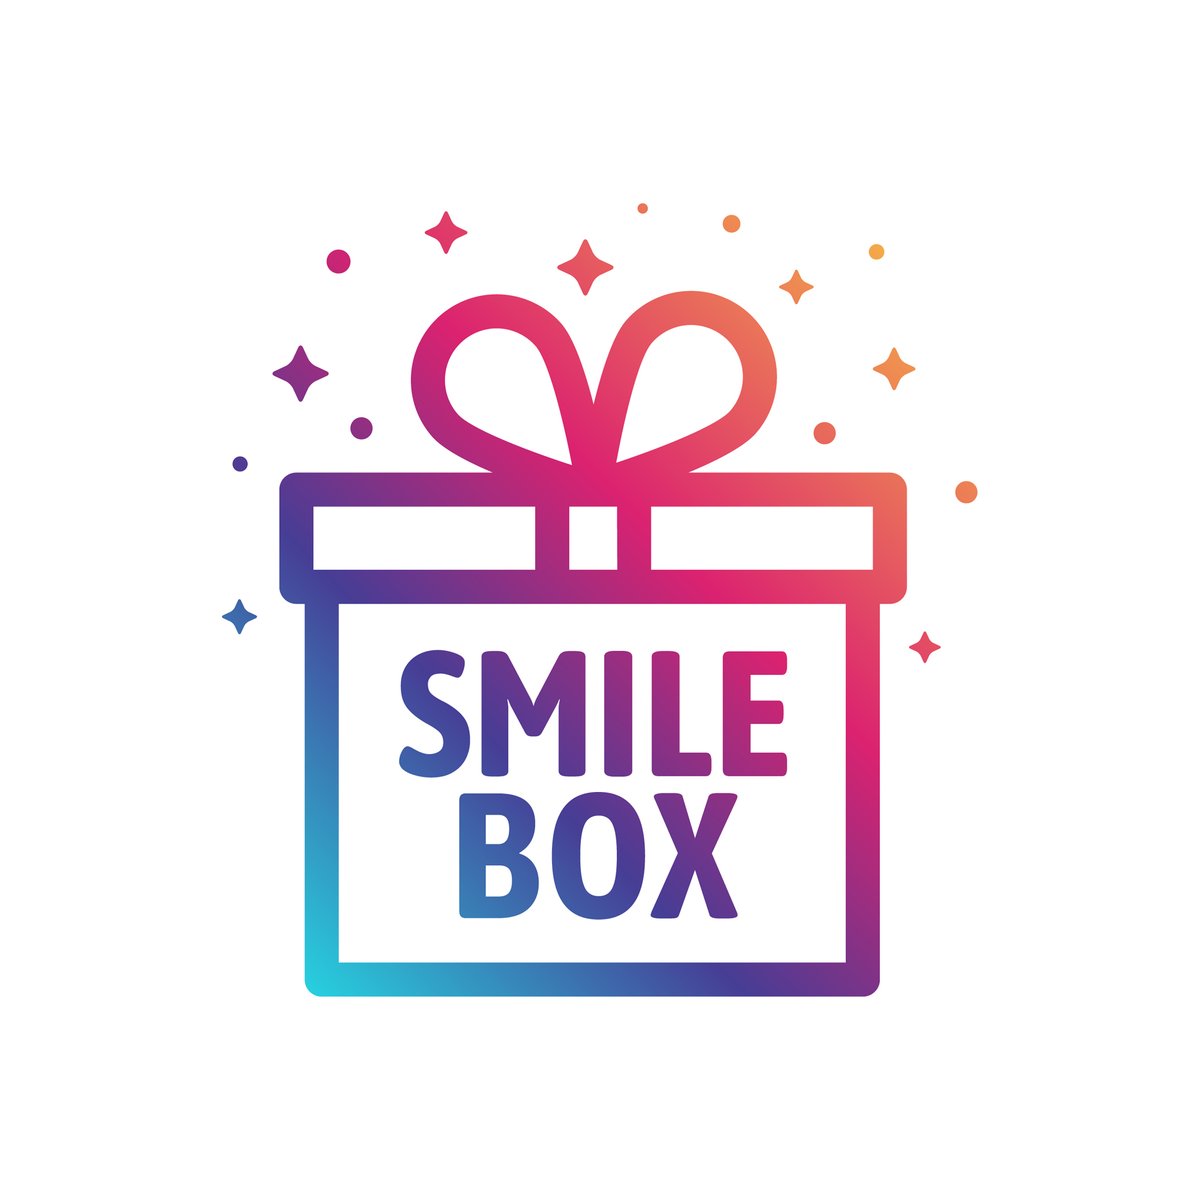 Enjoy your Bank Holiday Monday!

smile-box.co.uk

#MondayMotivation #LetsGo #TheWeekStartsHere #SmileBox #SmileStand #PositivityPostcards